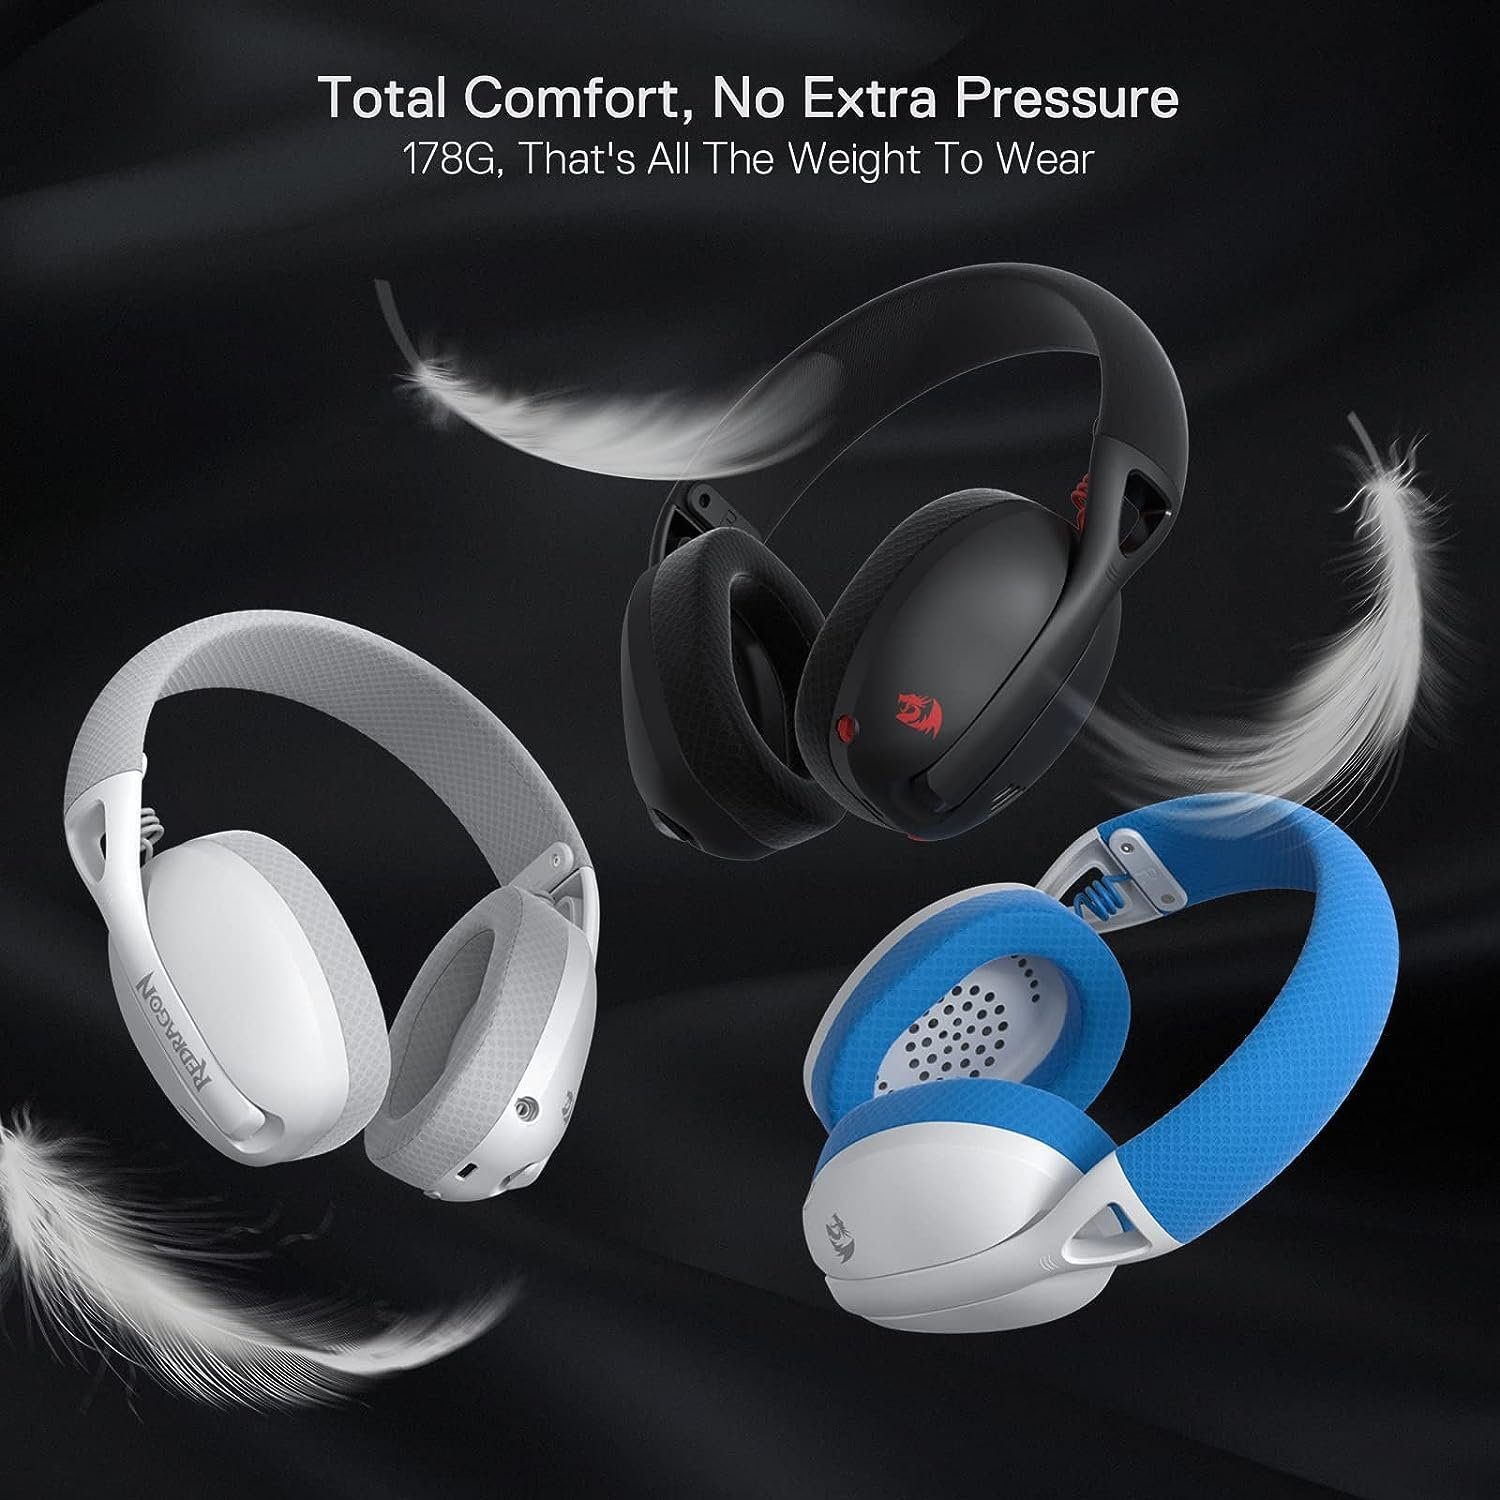 40 Treiber, Redragon Rauschunterdrückung Multi-Plattform) Gaming-Headset Sound, (Drahtloses und H848 Bluetooth-Gaming-Headset mit Drahtloses LED-Beleuchtung., 7.1 mm Gaming-Headset: